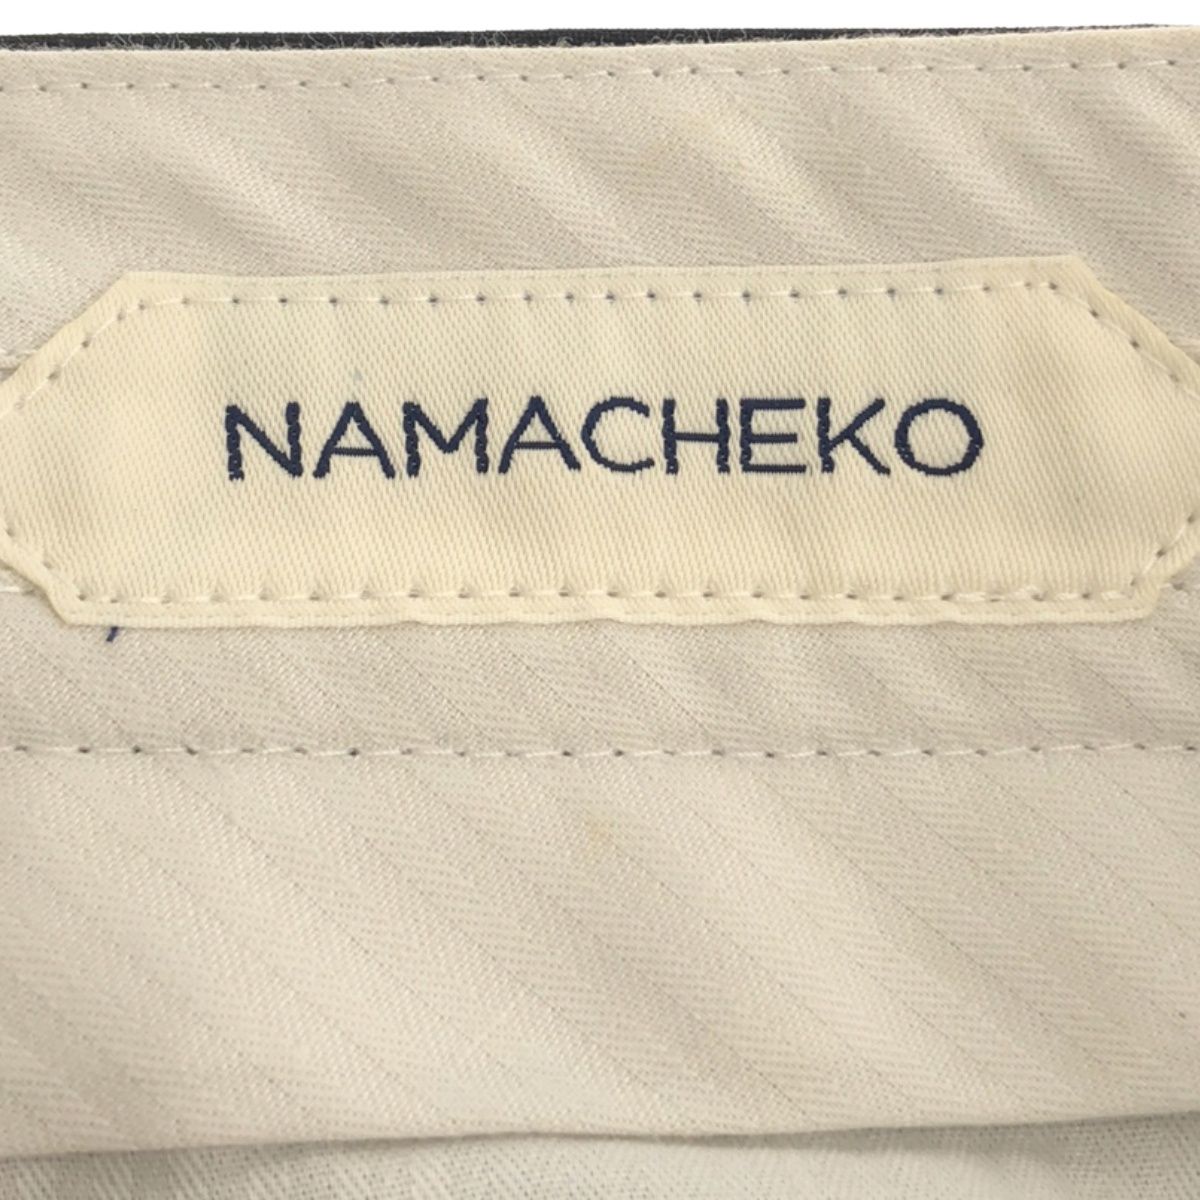 NAMACHEKO ナマチェコ 19AW SHIL TROUSER ウールスラックスパンツ ブラック M